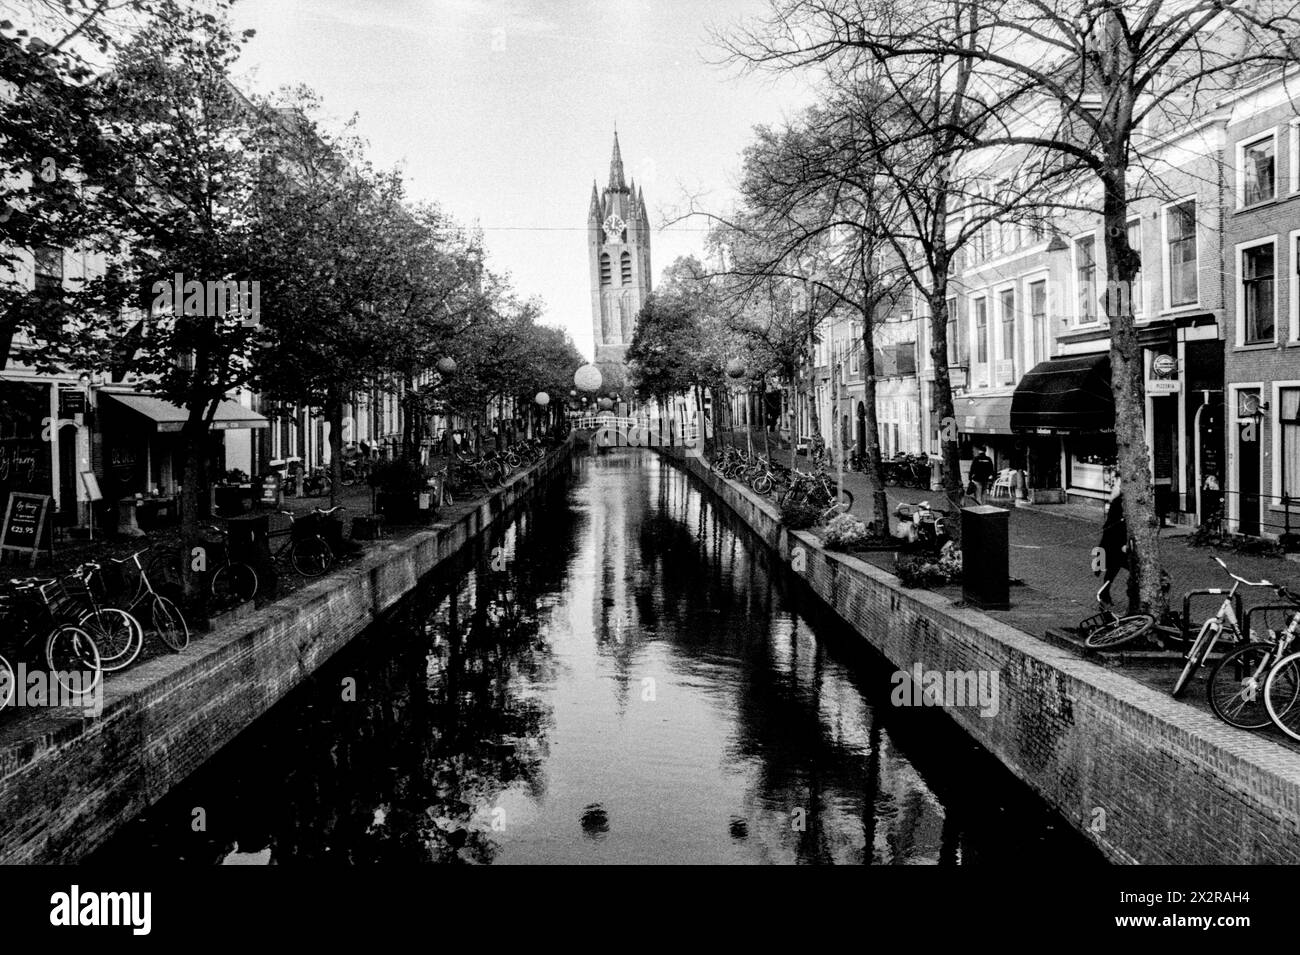 Antike Kanäle Blick auf einen der vielen Kanäle in der Innenstadt von Delft, einem riesigen, historischen Tourismus- und Reiseziel. Delft, Niederlande. Delft Down Town Grachten Gordel Zuid-Holland Nederland Copyright: XGuidoxKoppesxPhotox Stockfoto